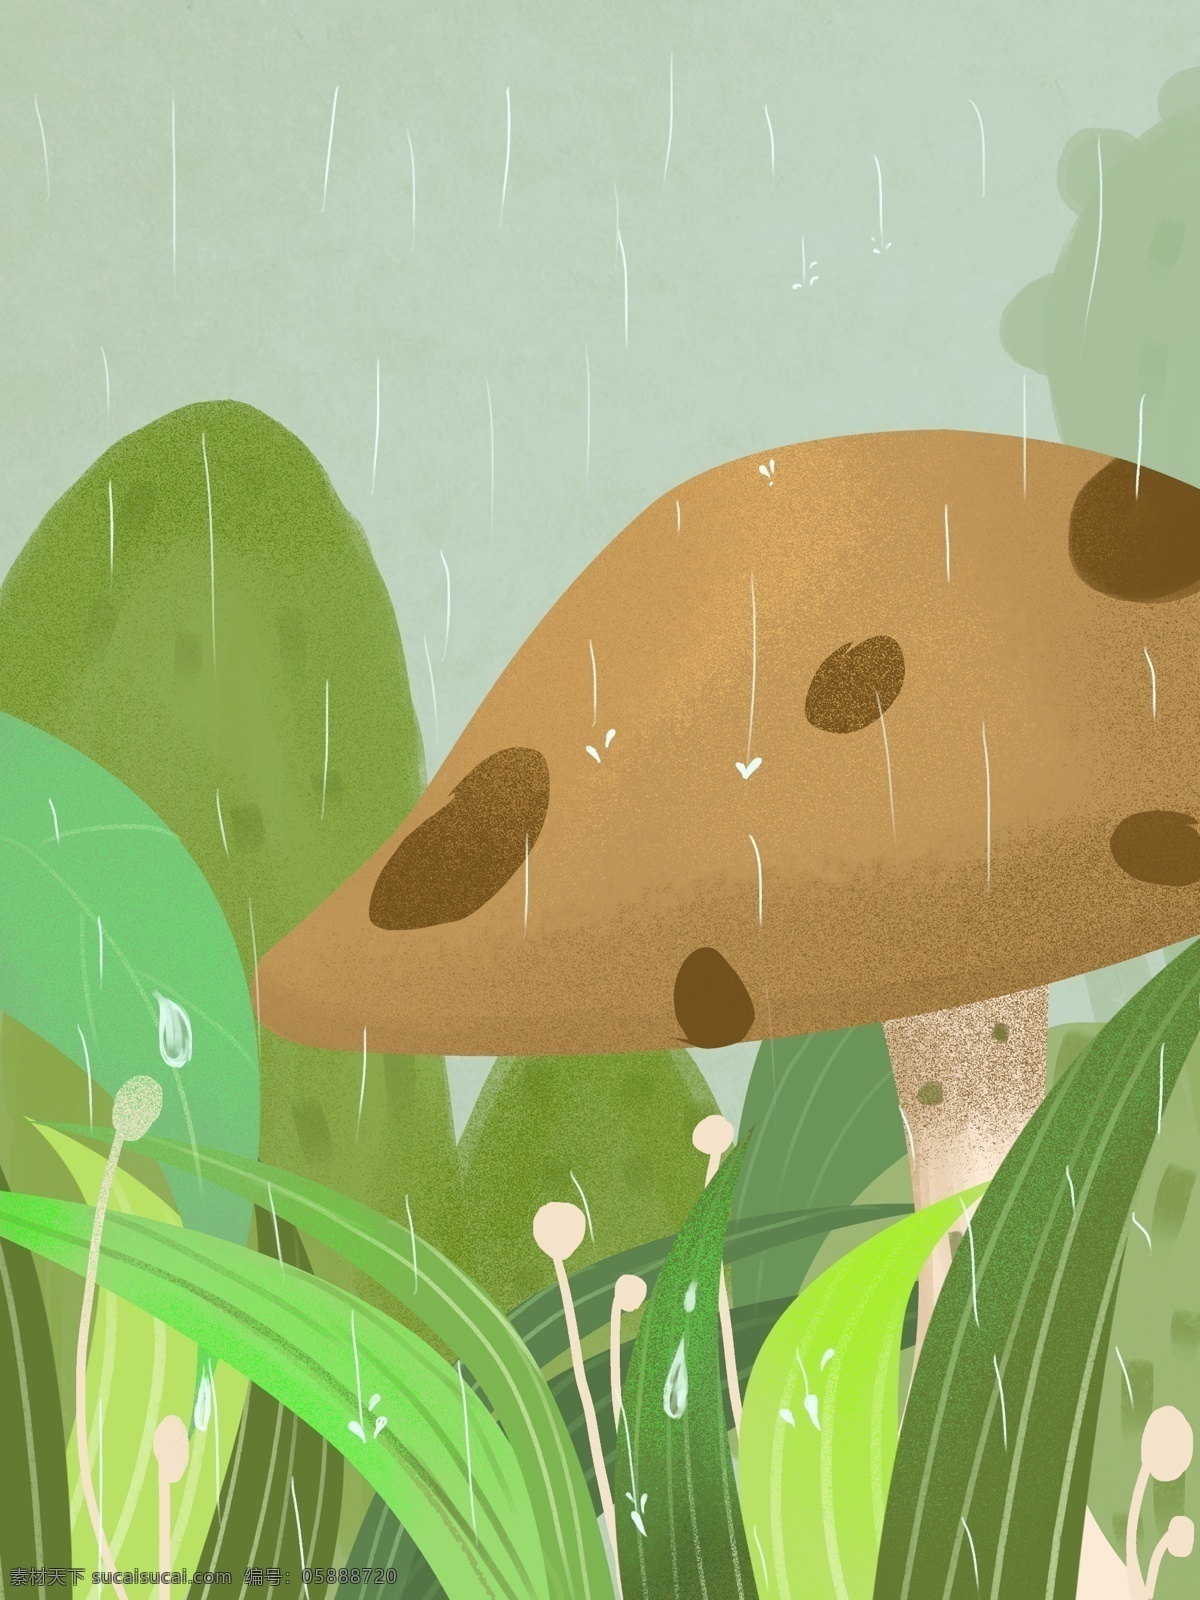 小雨 节气 蘑菇 插画 背景 下雨 小雨节气 插画背景 绿色背景 治愈系背景 植物背景